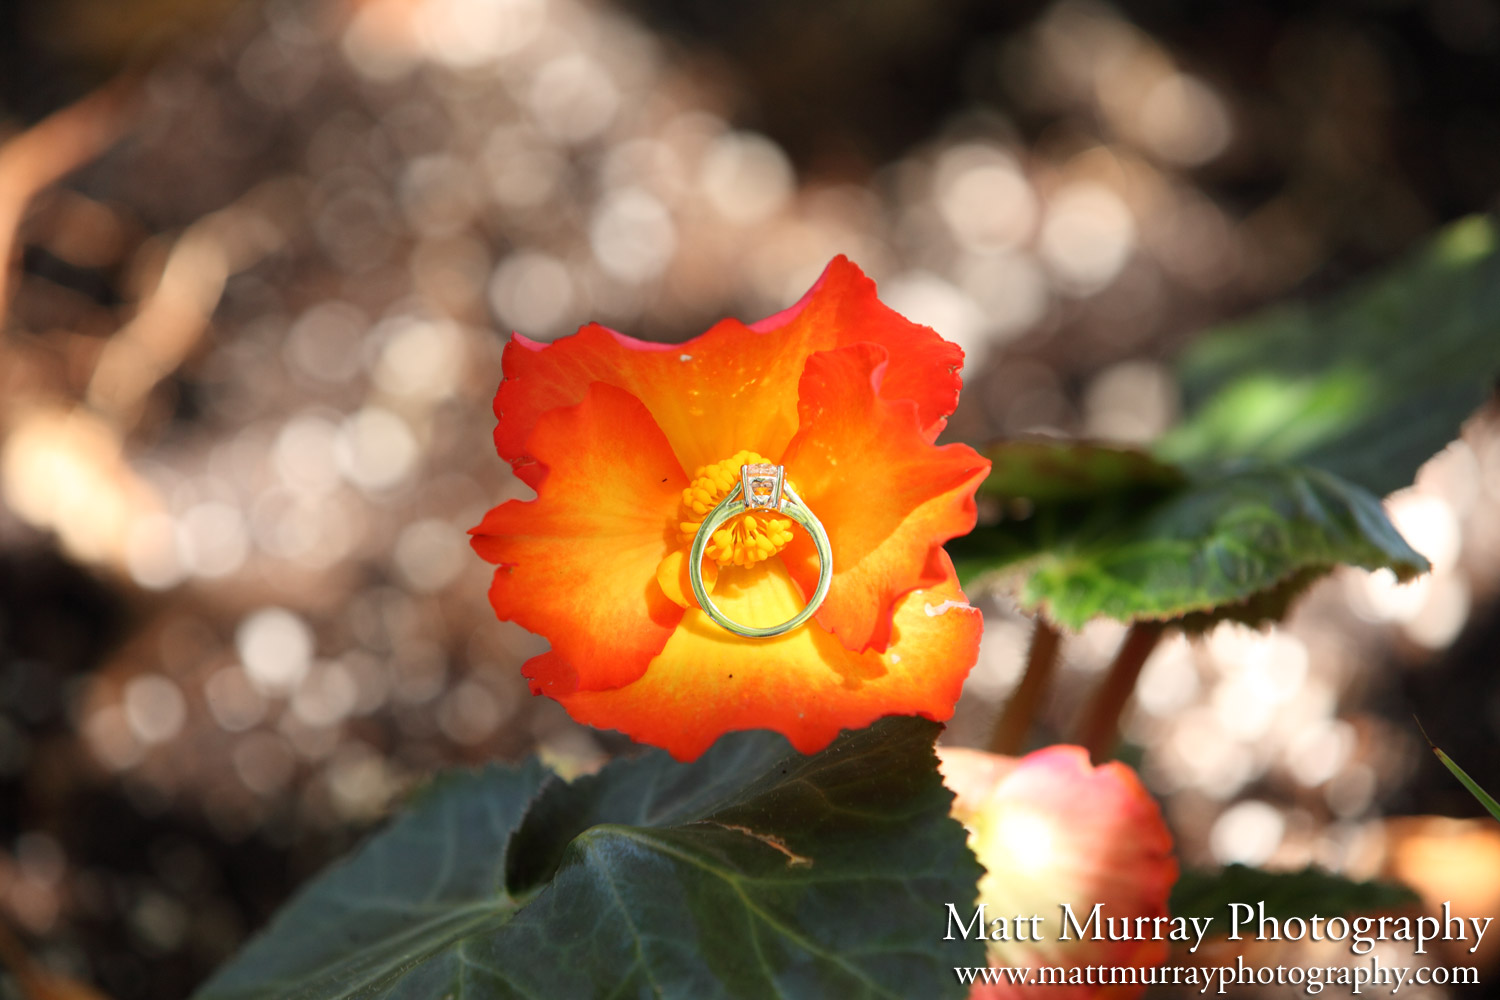 Queen Elizabeth Park Engagement Proposal Flower